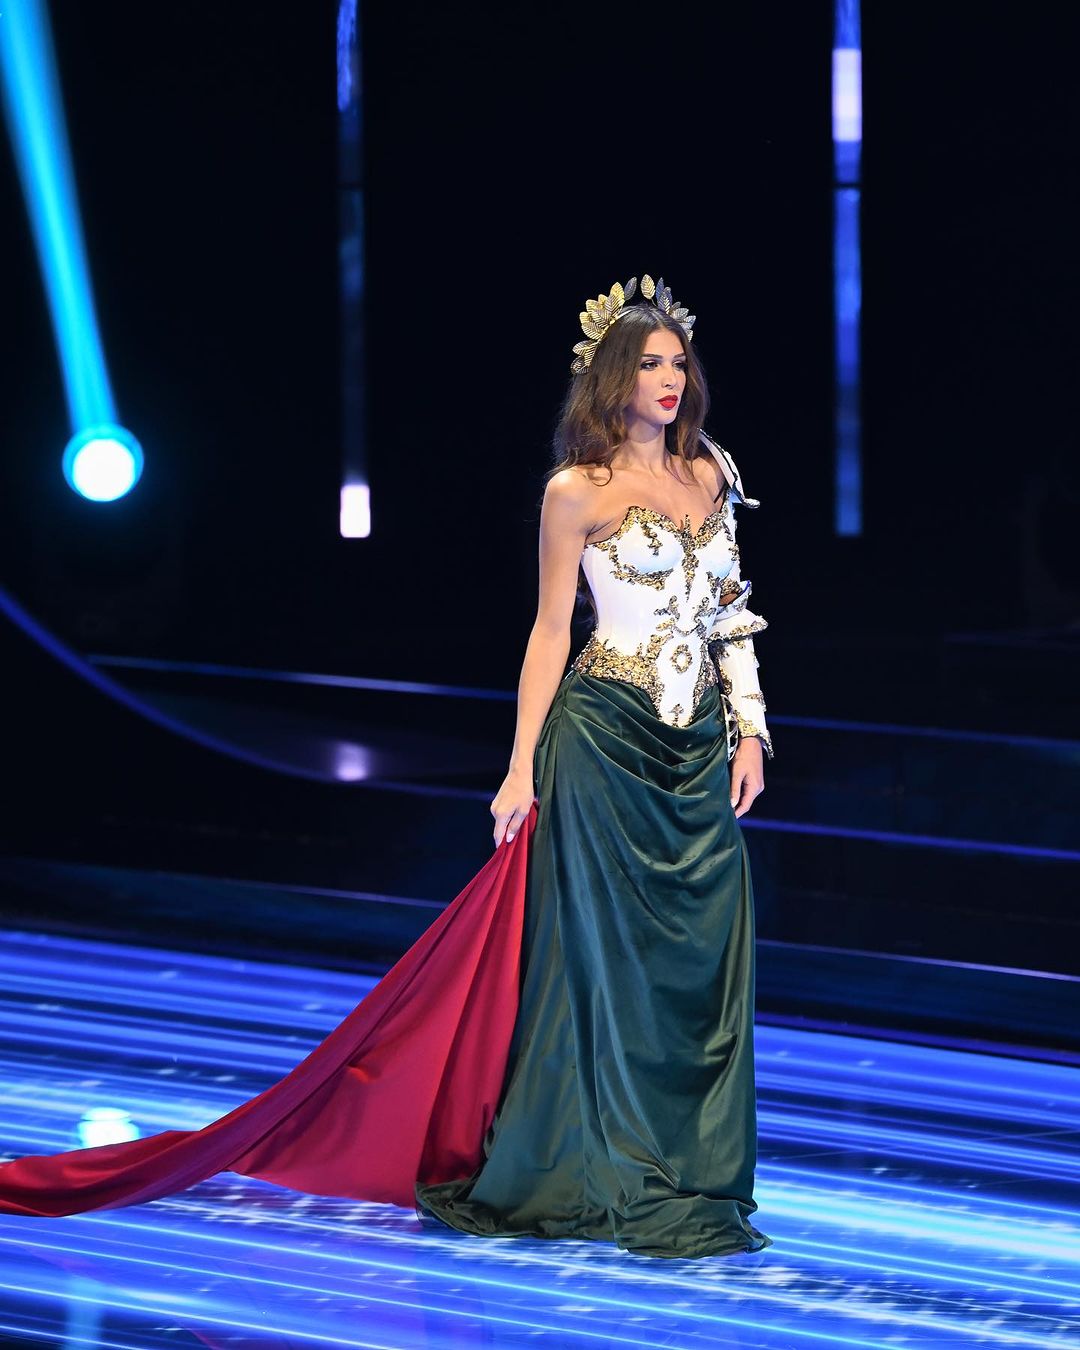 Pela primeira vez, mulher transgénero vence o título de Miss Portugal